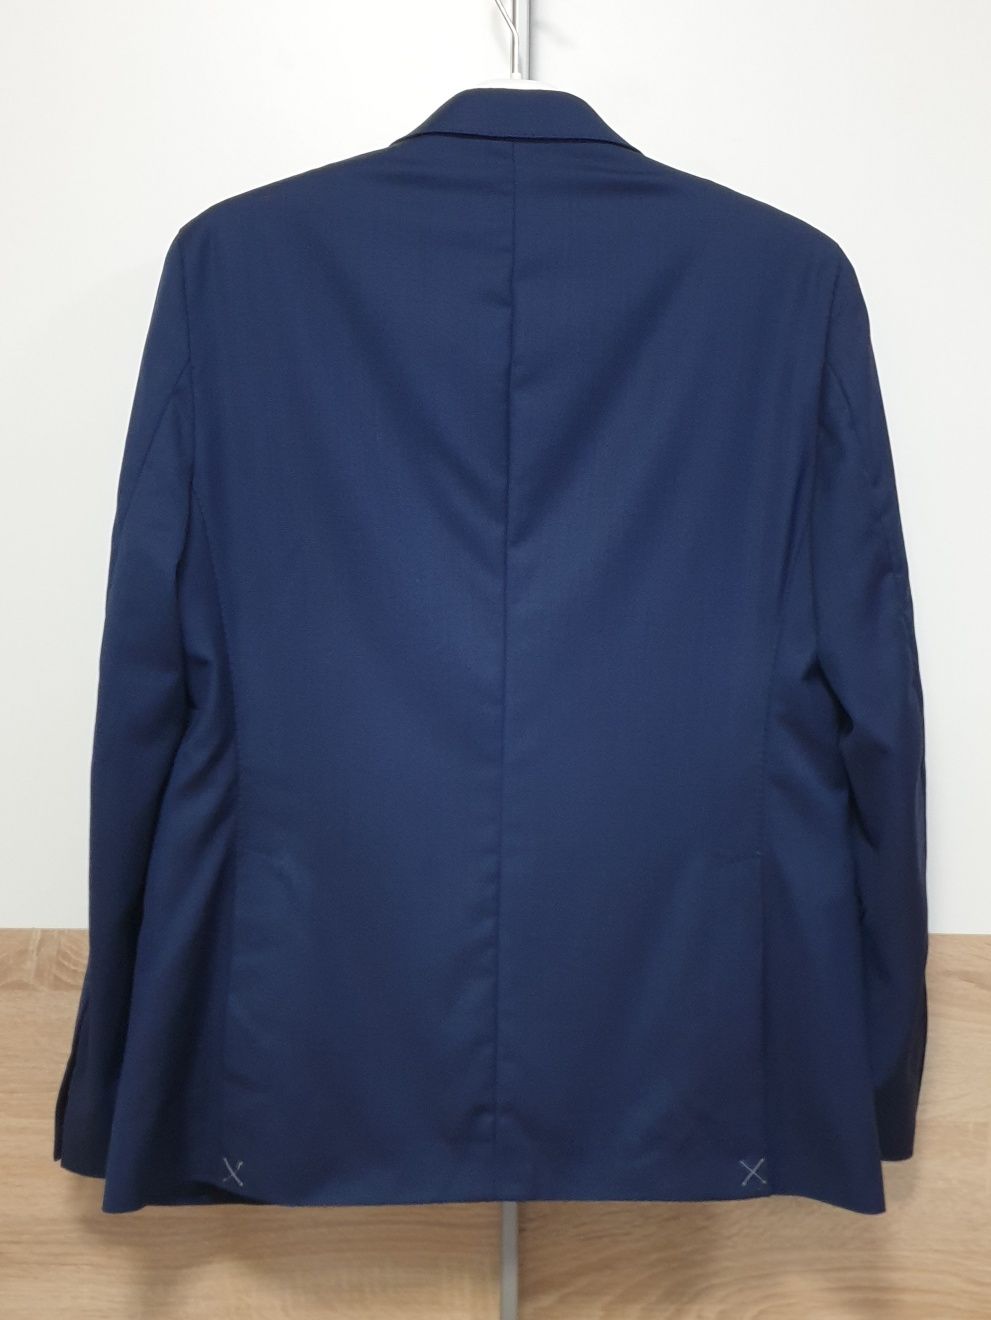 Massimo Dutti - 52  L - Піджак чоловічий Синій мужской пиджак